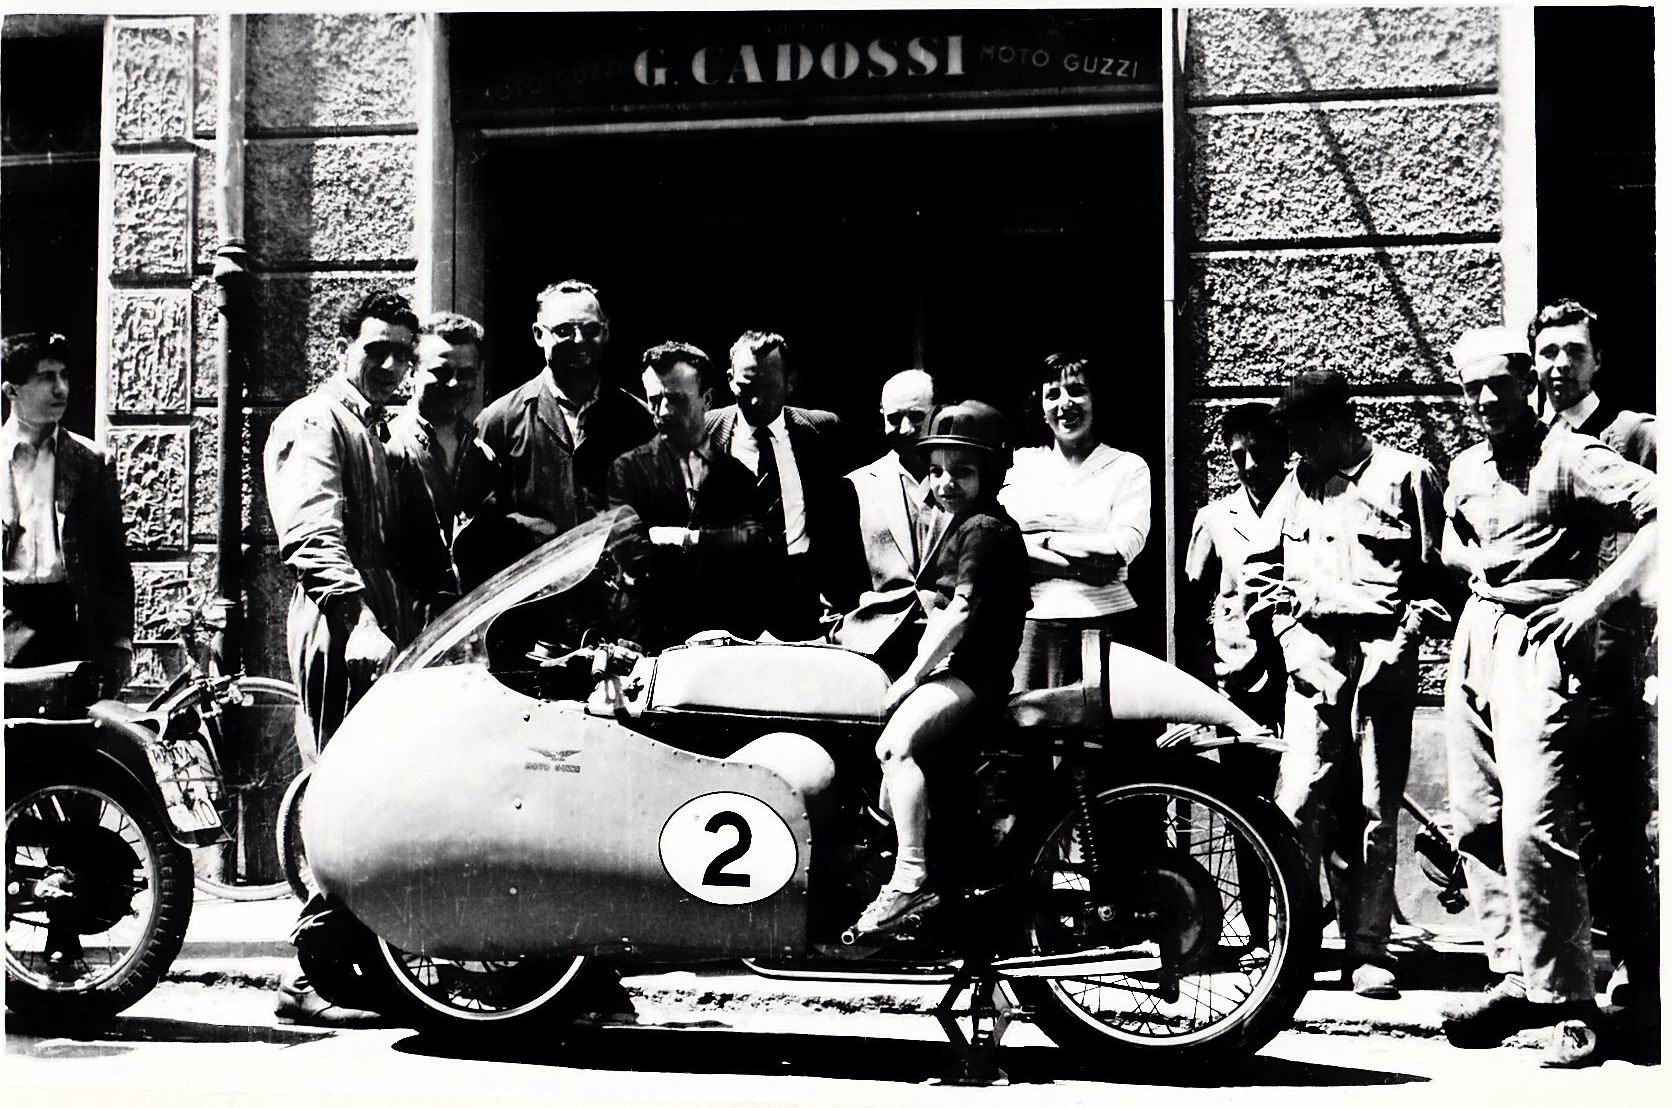 1953-Concessionario-Moto-Guzzi-Cadossi-500-cc-da-corsa-Vie-Berengario-e-T-Trieste-1